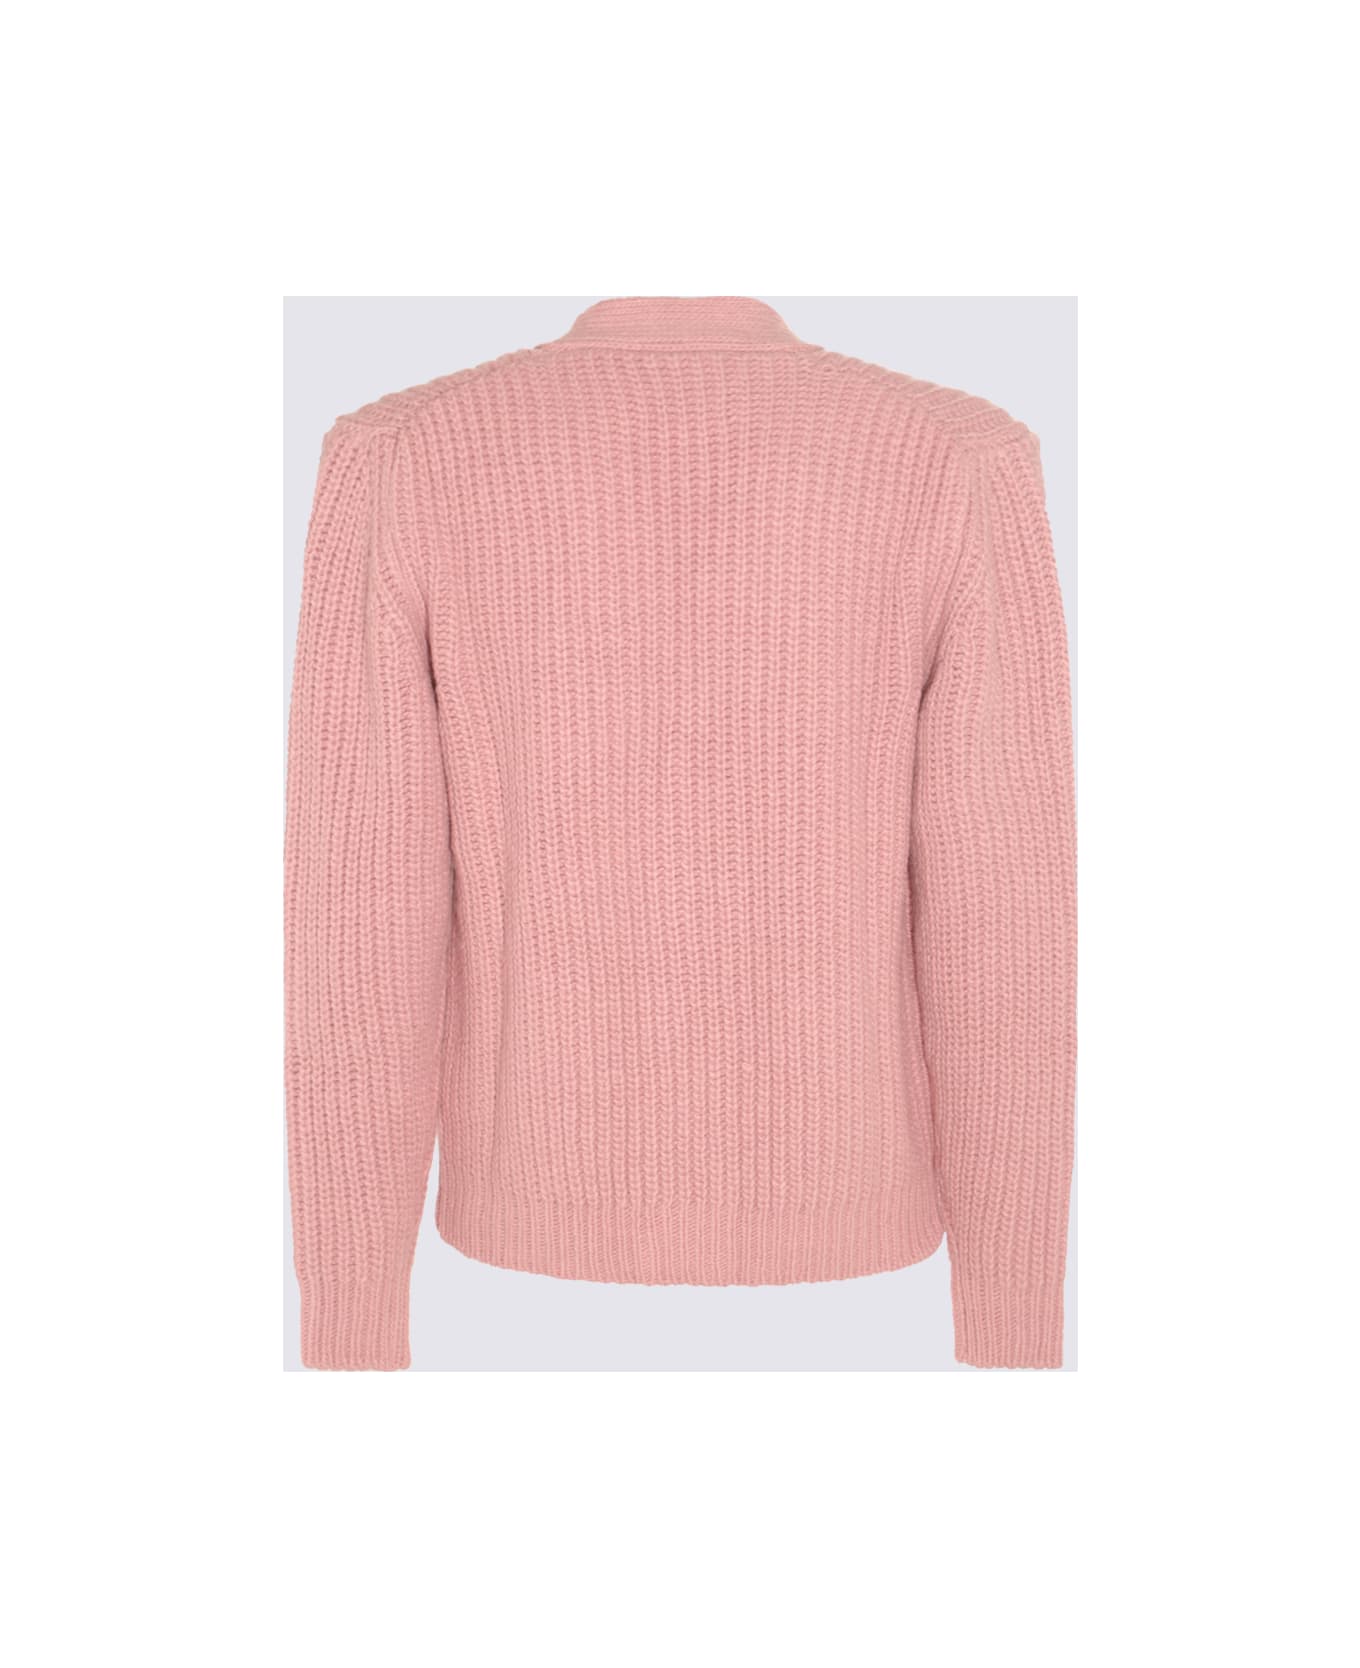 PT Torino Pink Wool Blend Cardigan